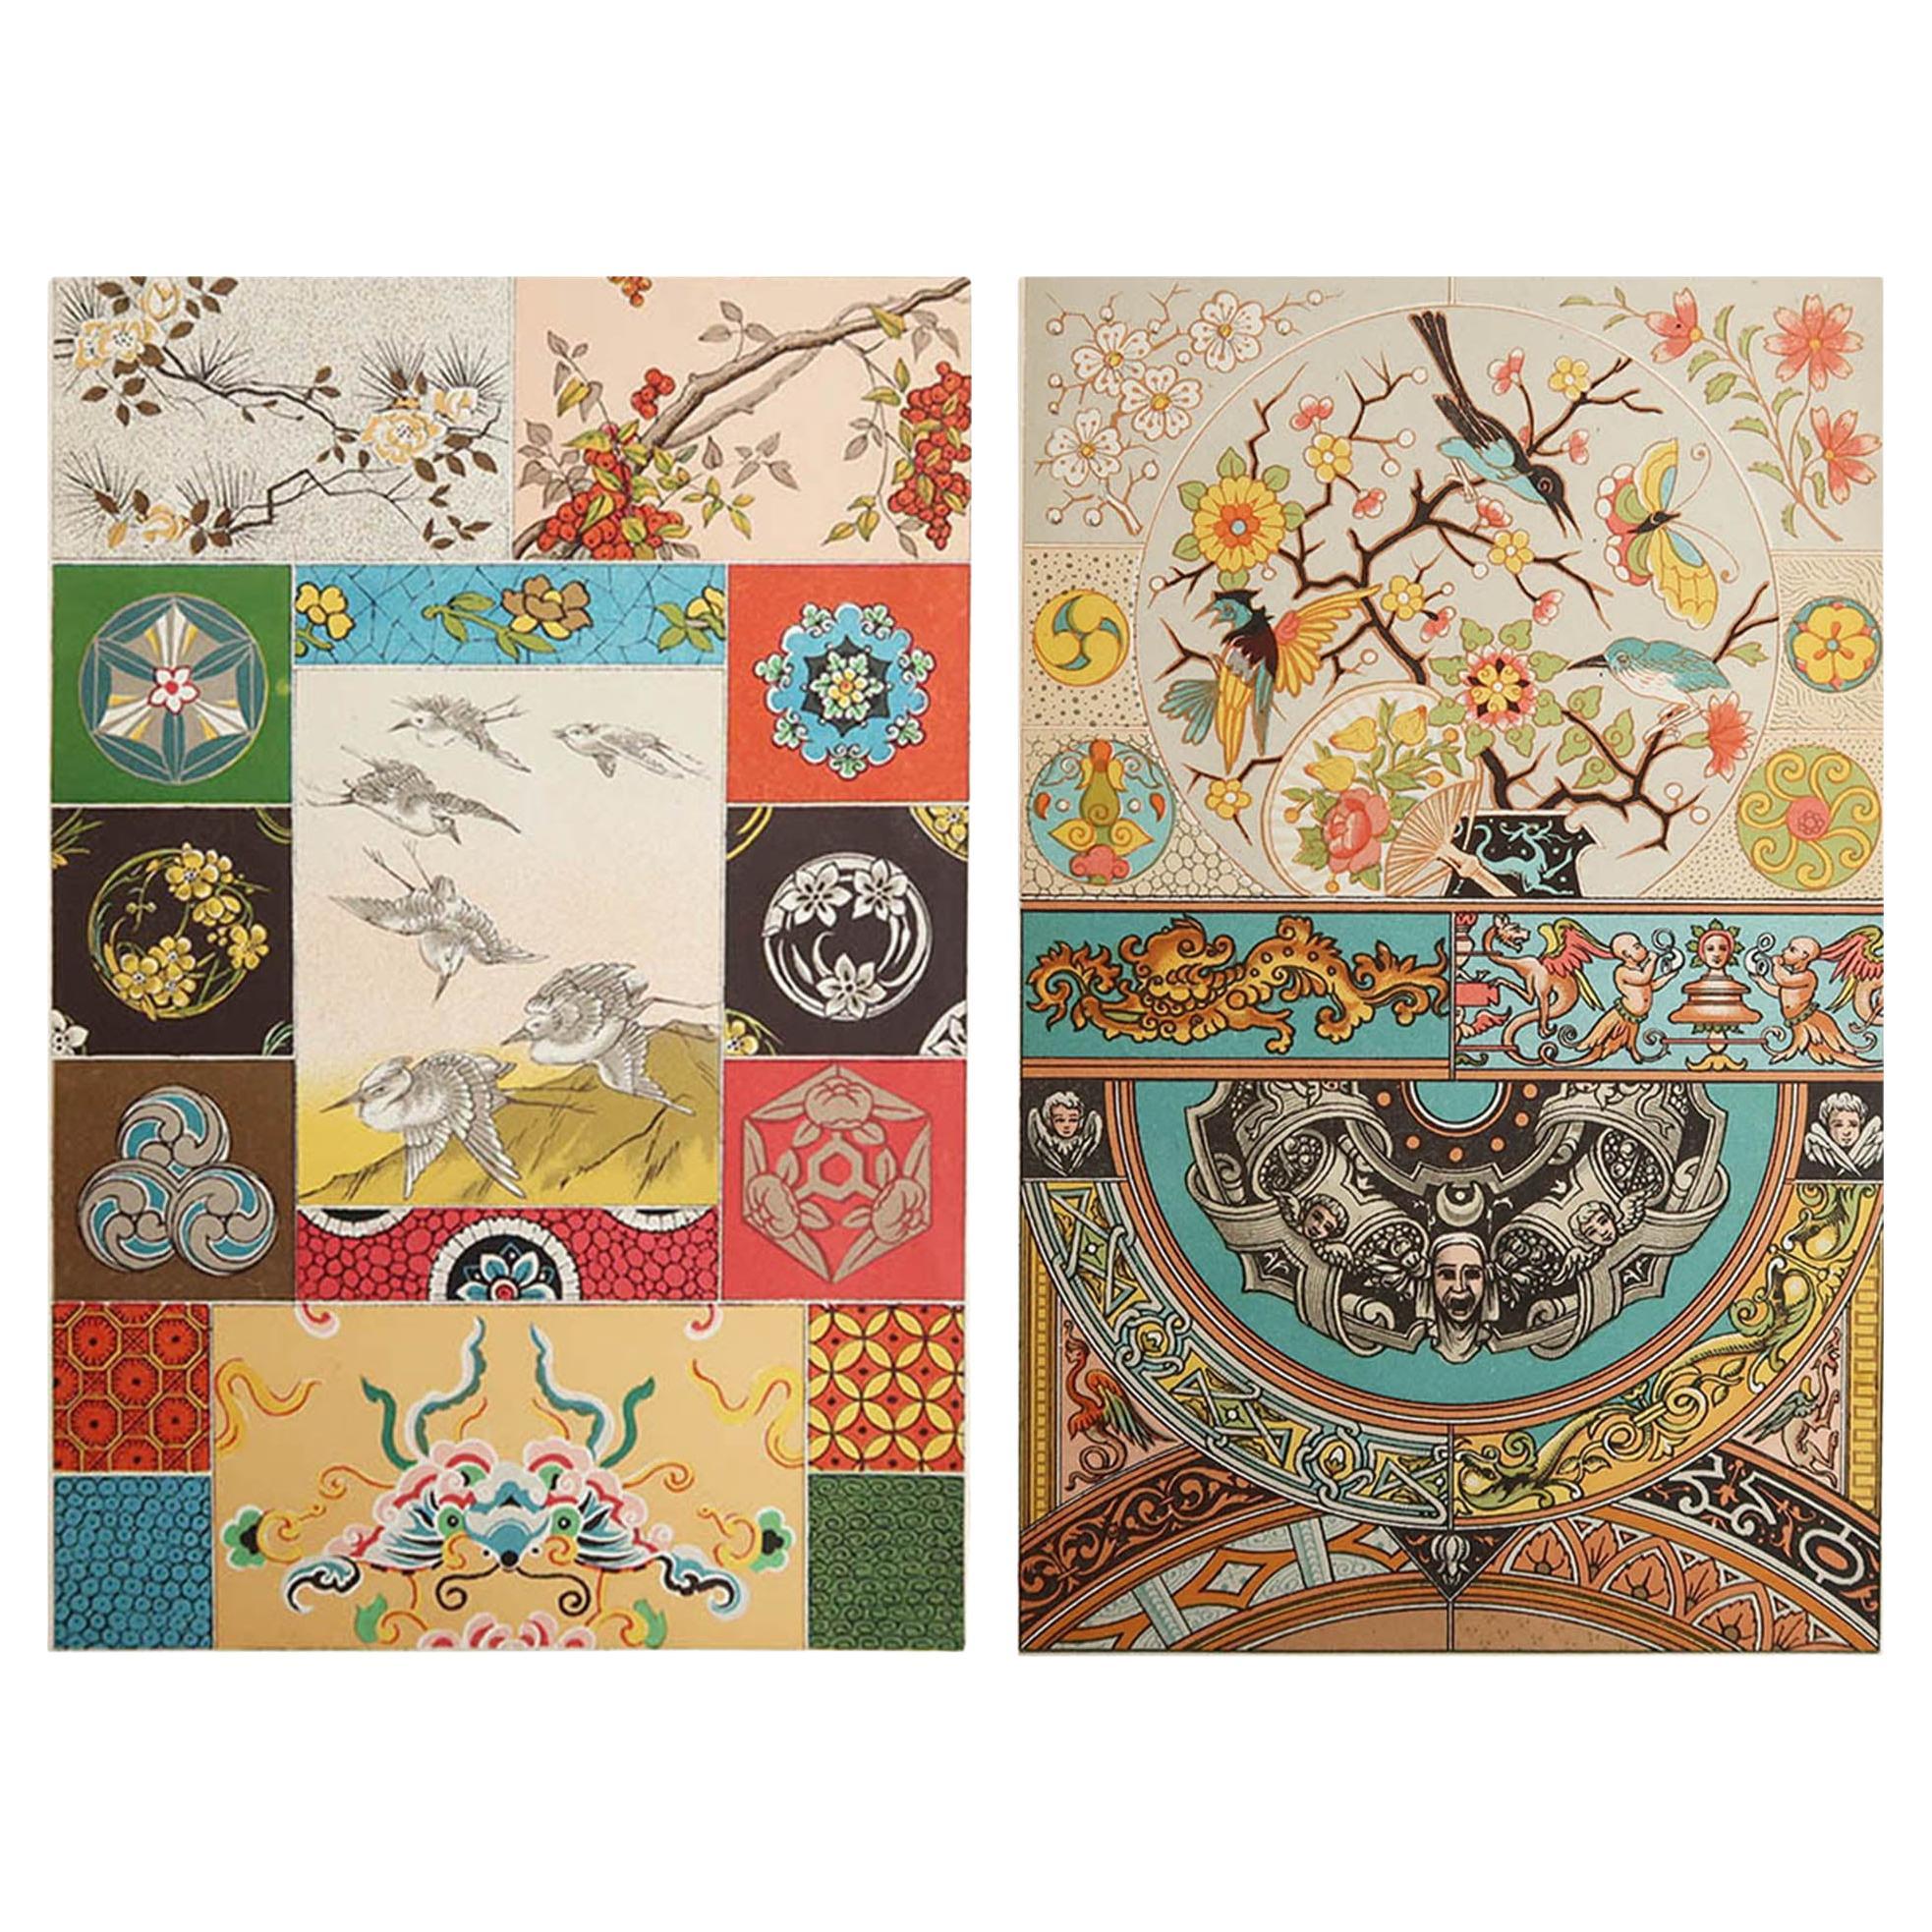   Pair of Original Antique Prints of Decorative Art- Japonisme. C.1880 For Sale